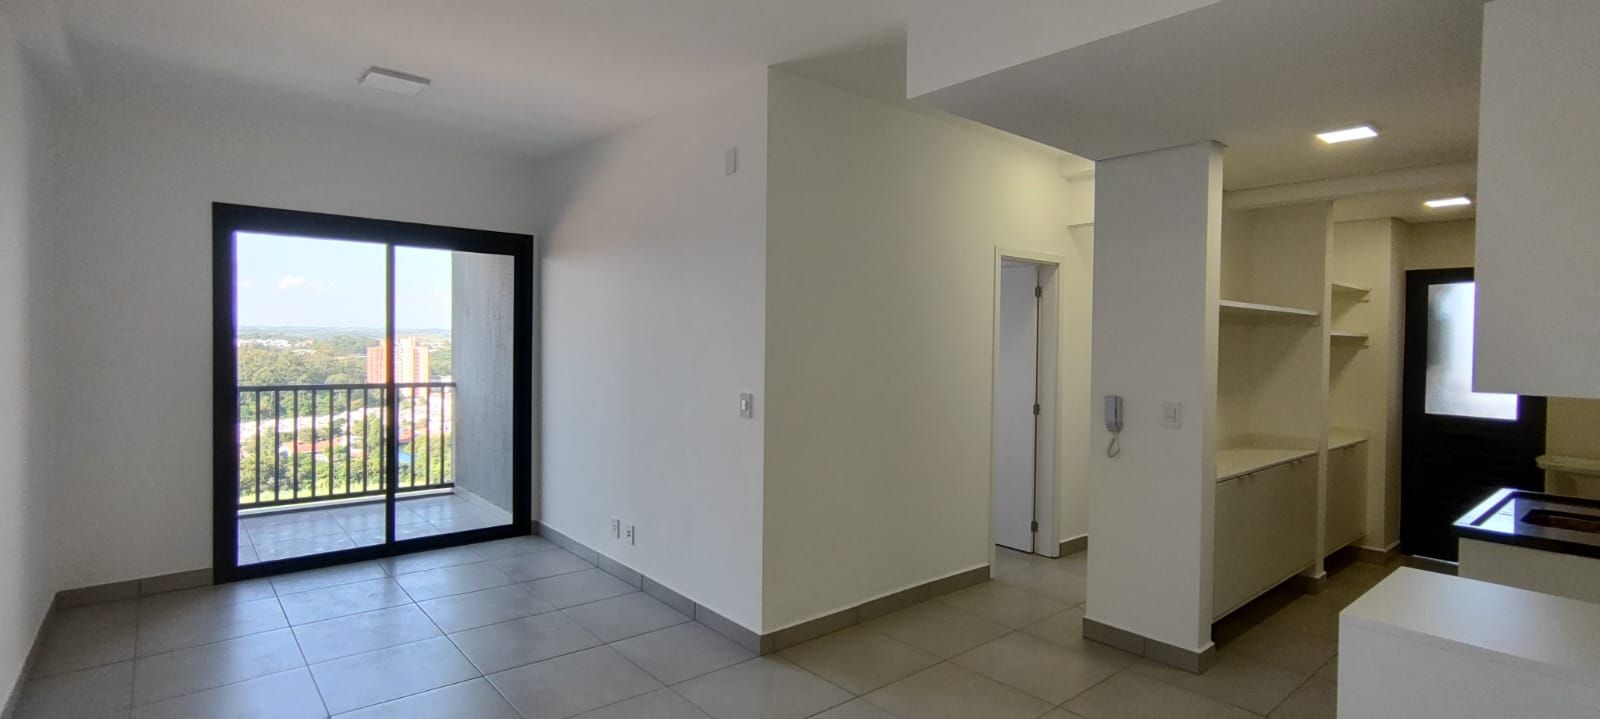 Apartamento, 2 quartos, 76 m² - Foto 3